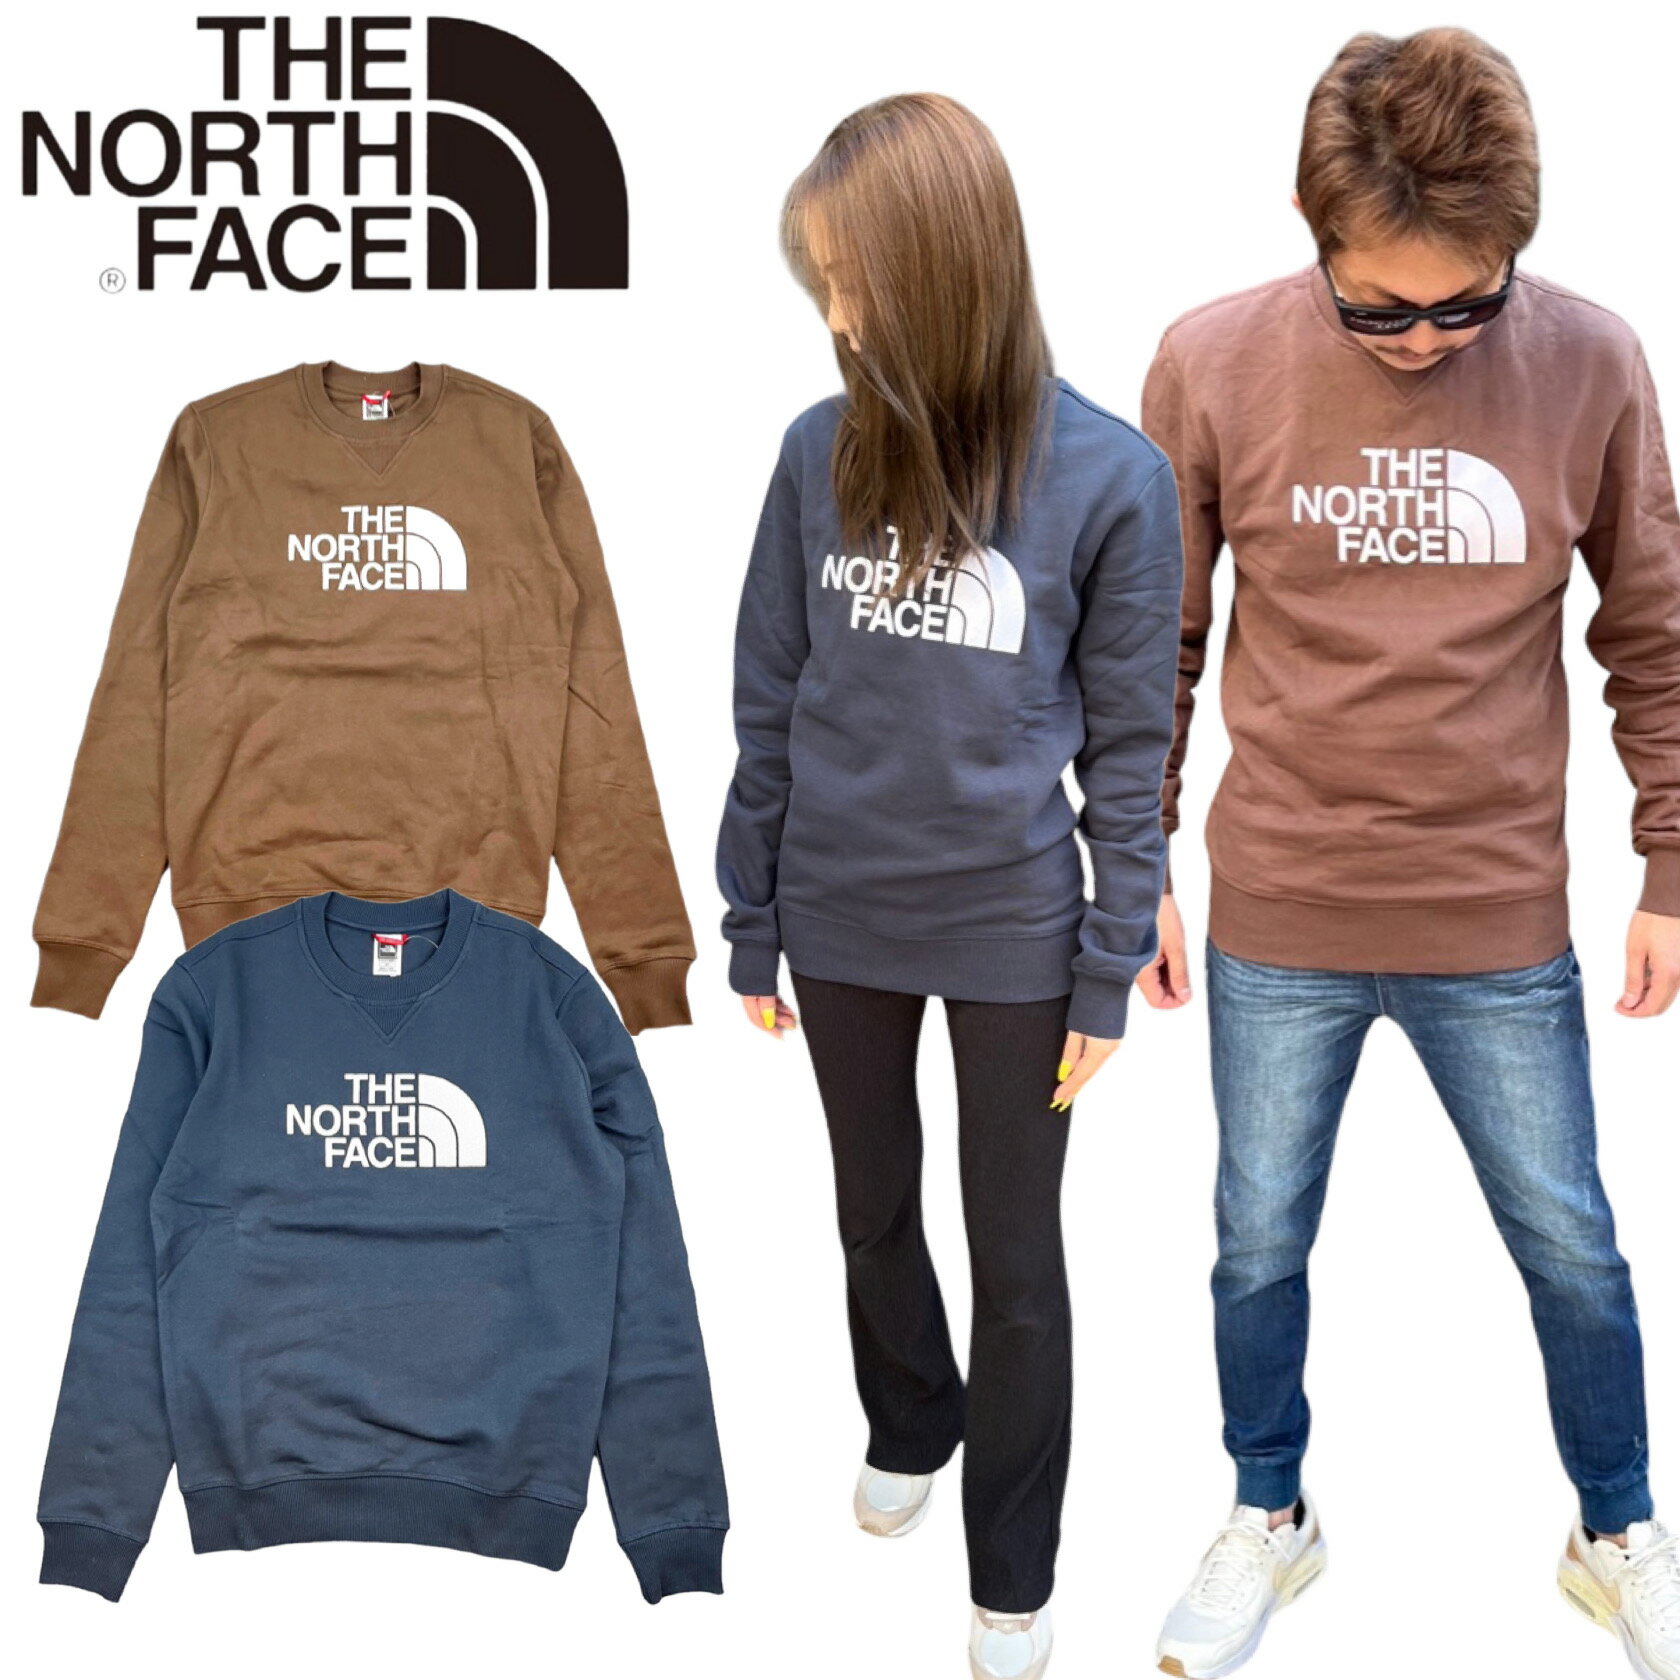 ザ・ノース・フェイス トレーナー メンズ ザ ノースフェイス The North Face トレーナー NF0A4SVR メンズ 裏起毛 クルーネック ハーフドーム 刺繍ロゴ プルオーバー スウェット THE NORTH FACE DREW PEAK